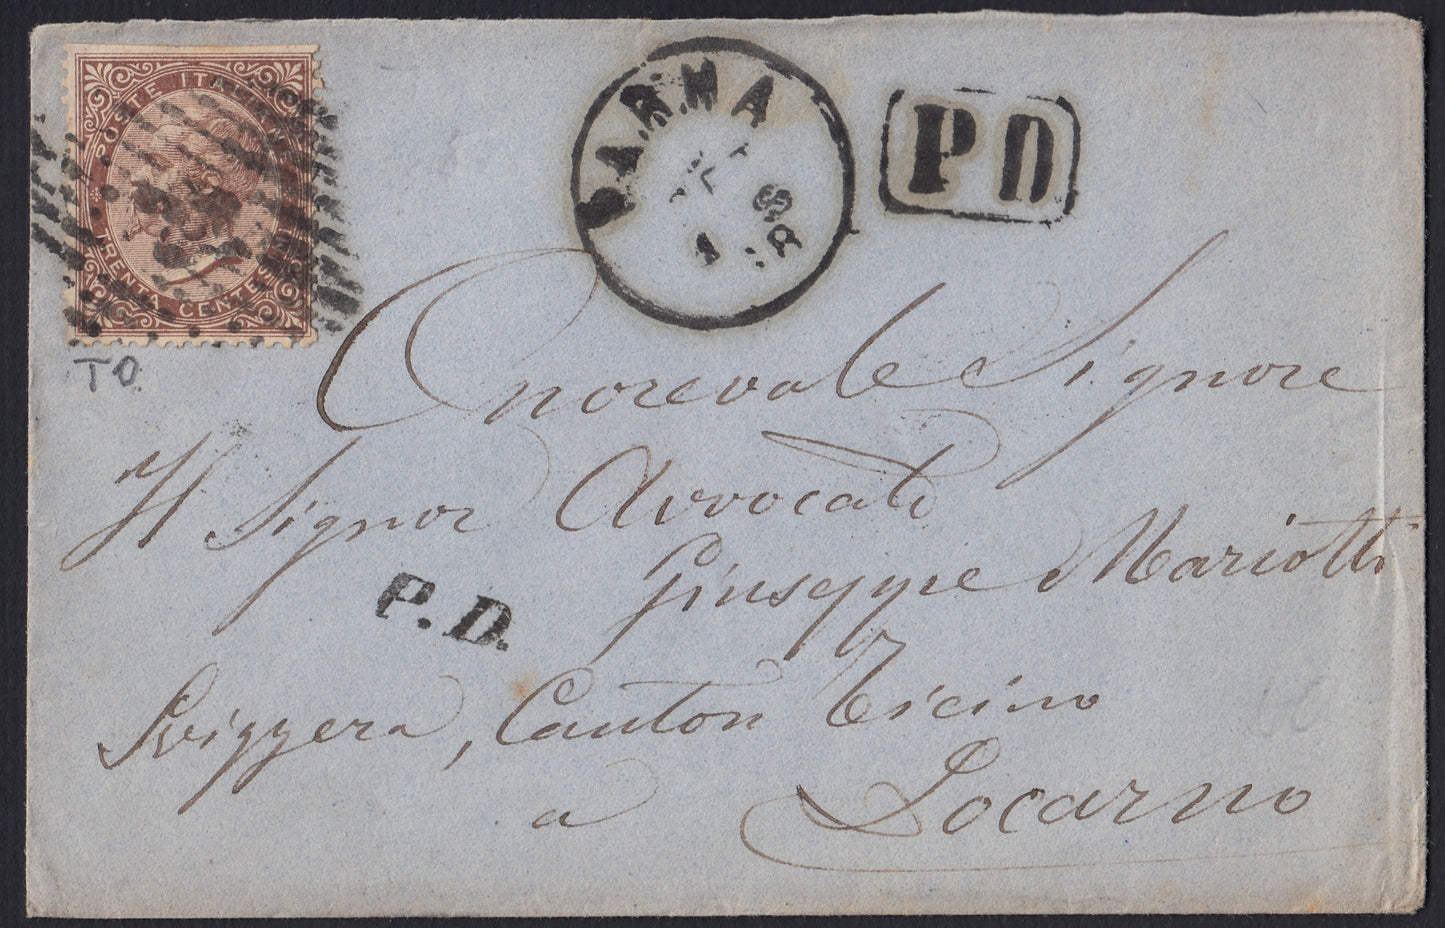 VEII173 - 1868 - Edición De La Rue Turín edición c. 30 marrón marrón en carta de Parma a Locarno (T19)